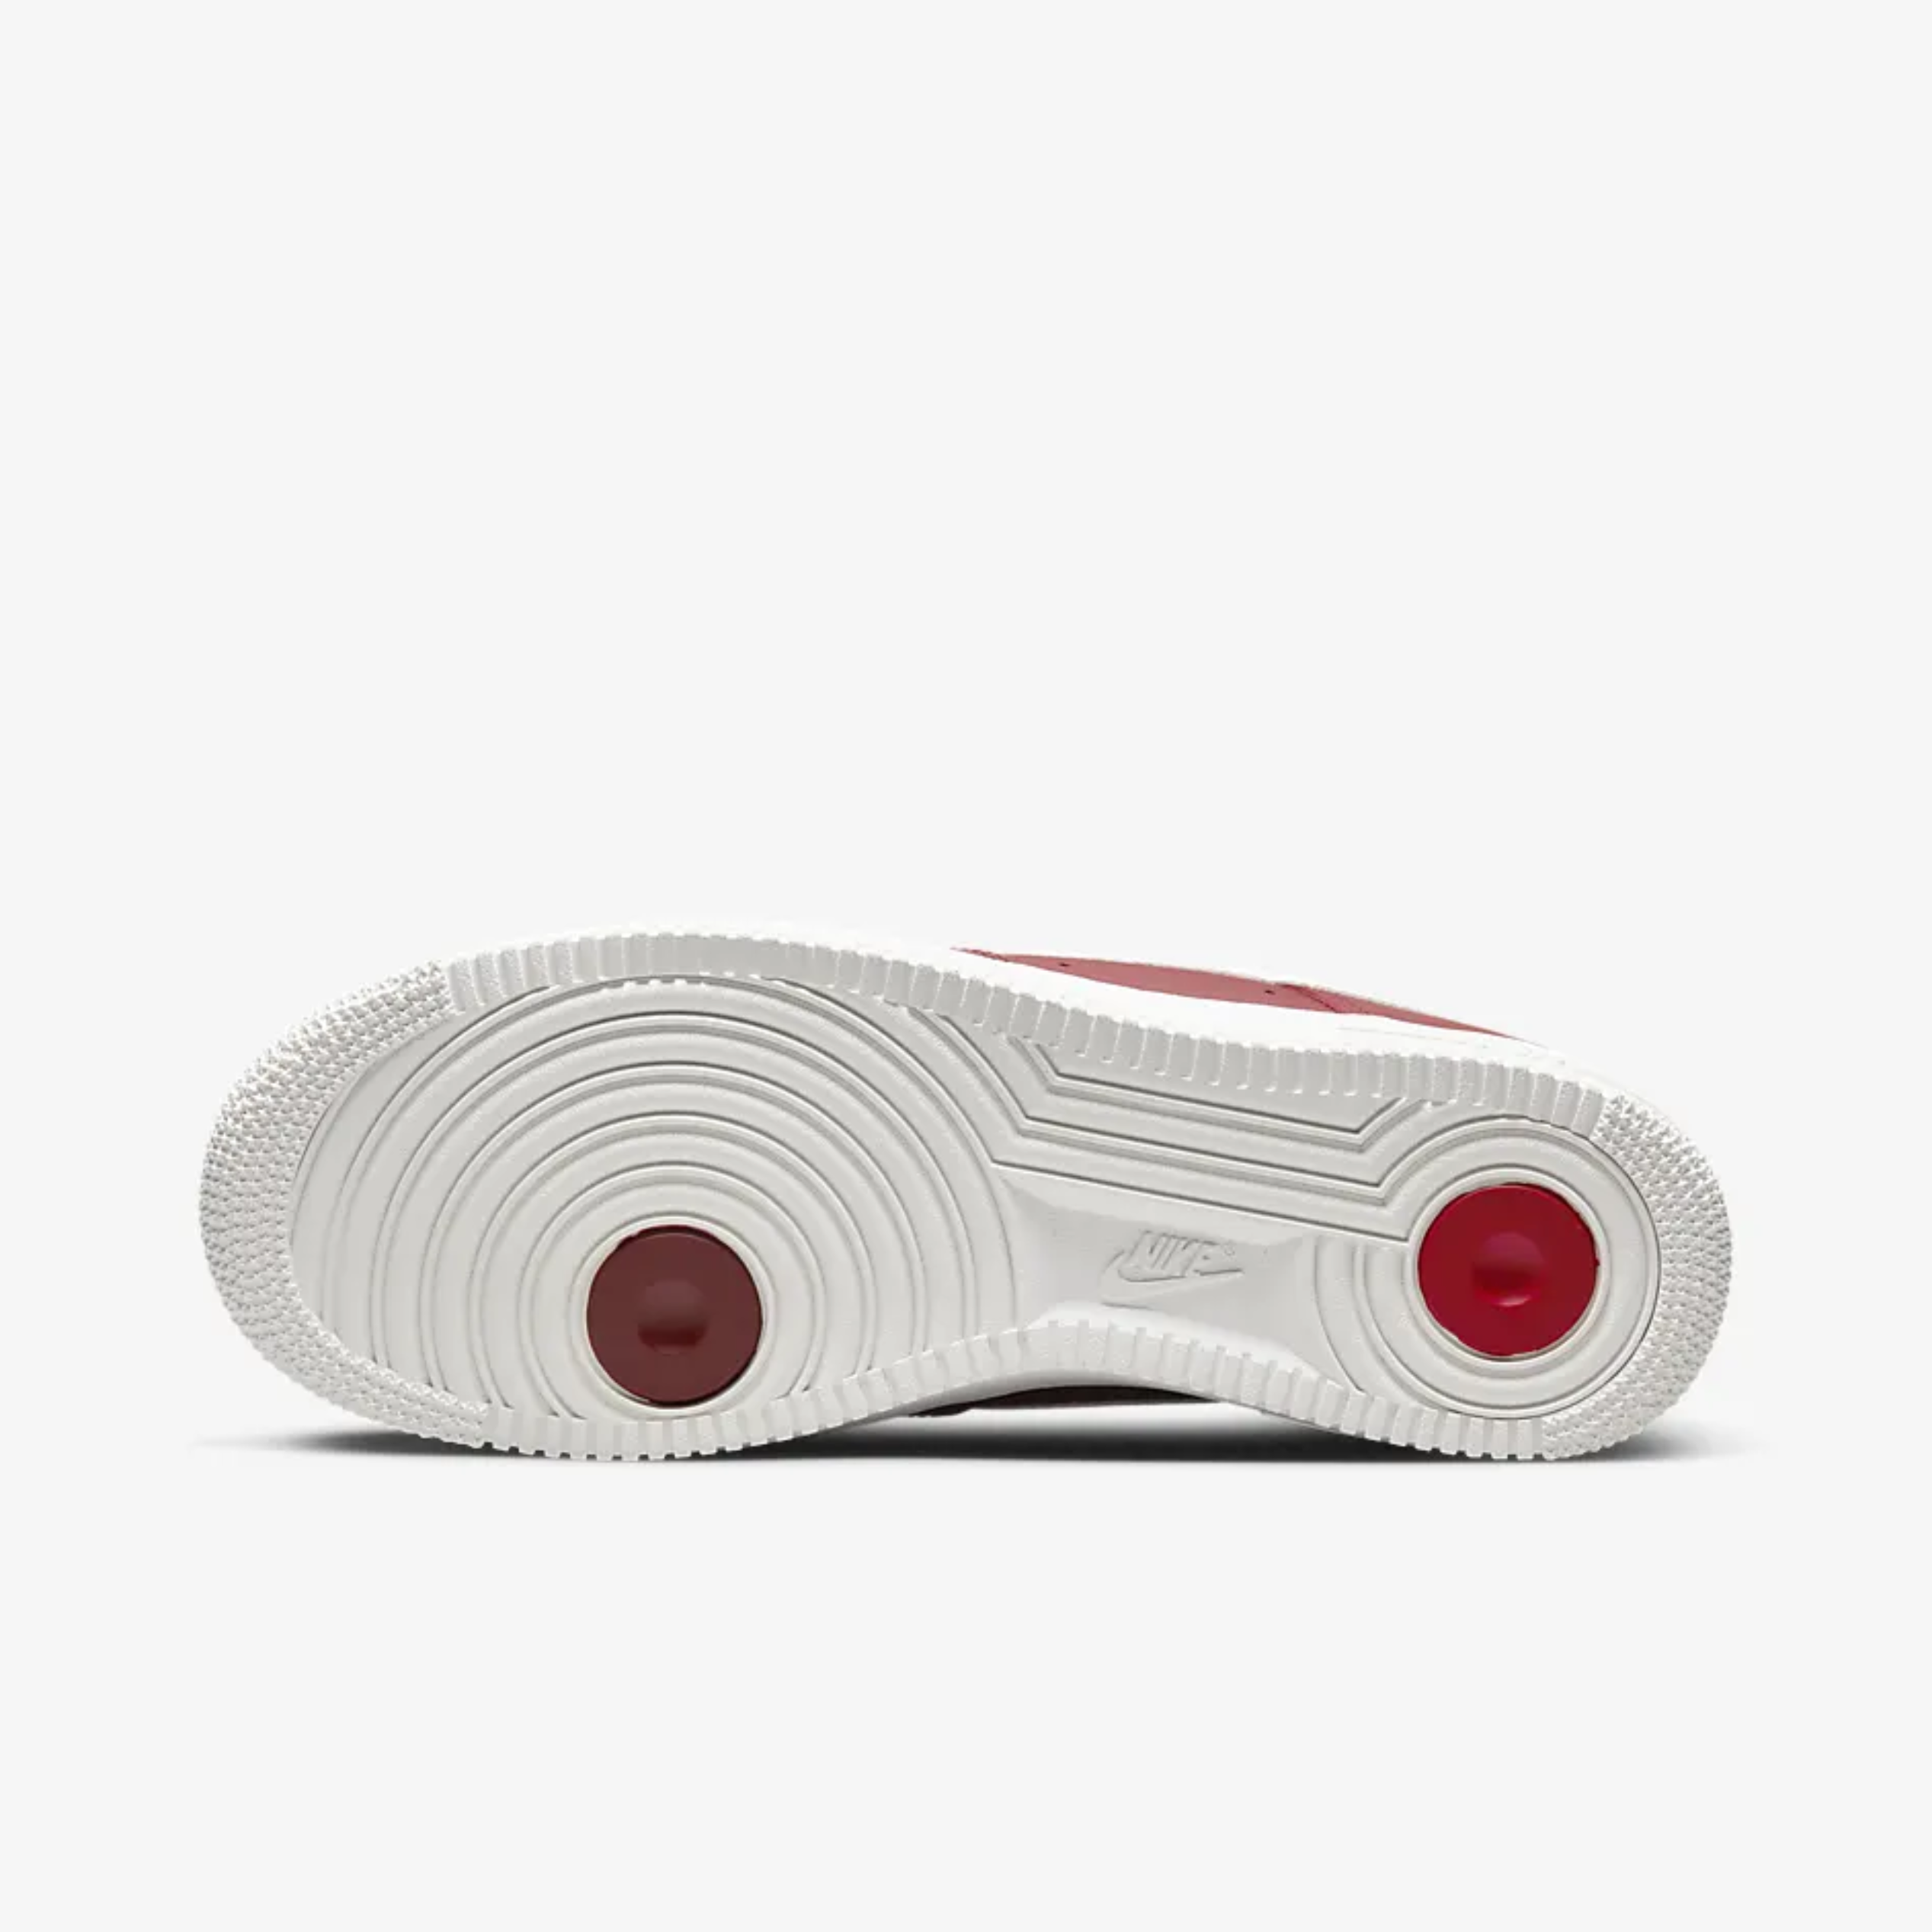 Nike Air Force 1 '07 Premium Red